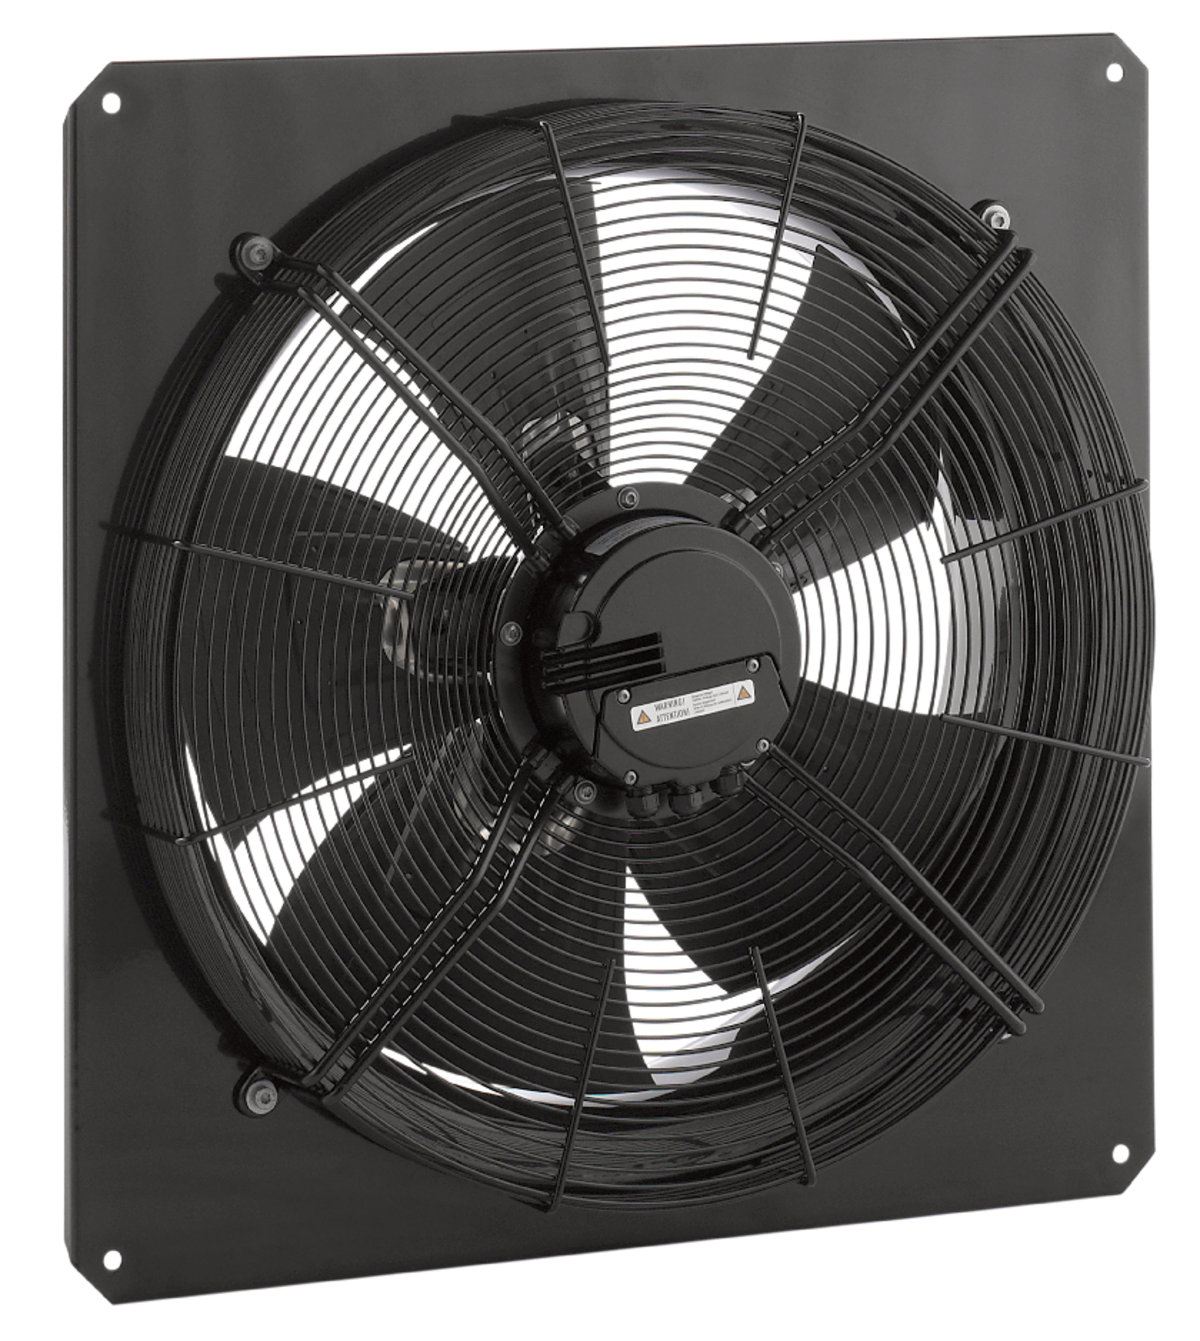 AW - Ašiniai ventiliatoriai - Ventiliatoriai - Produktai - Systemair